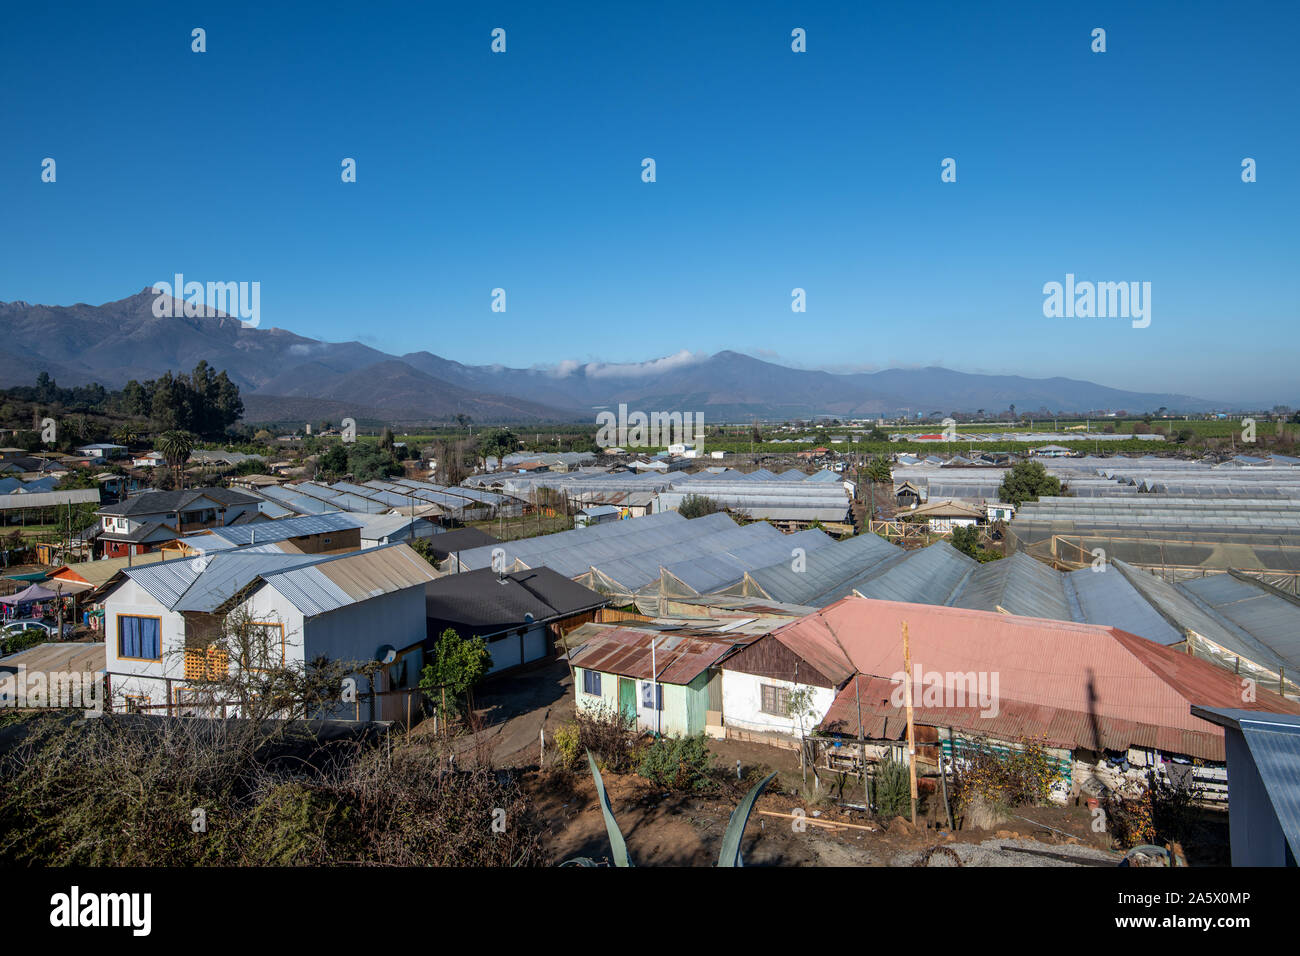 Una pequeña comunidad agrícola ubicado debajo de una cordillera, La Serena, Chile Foto de stock